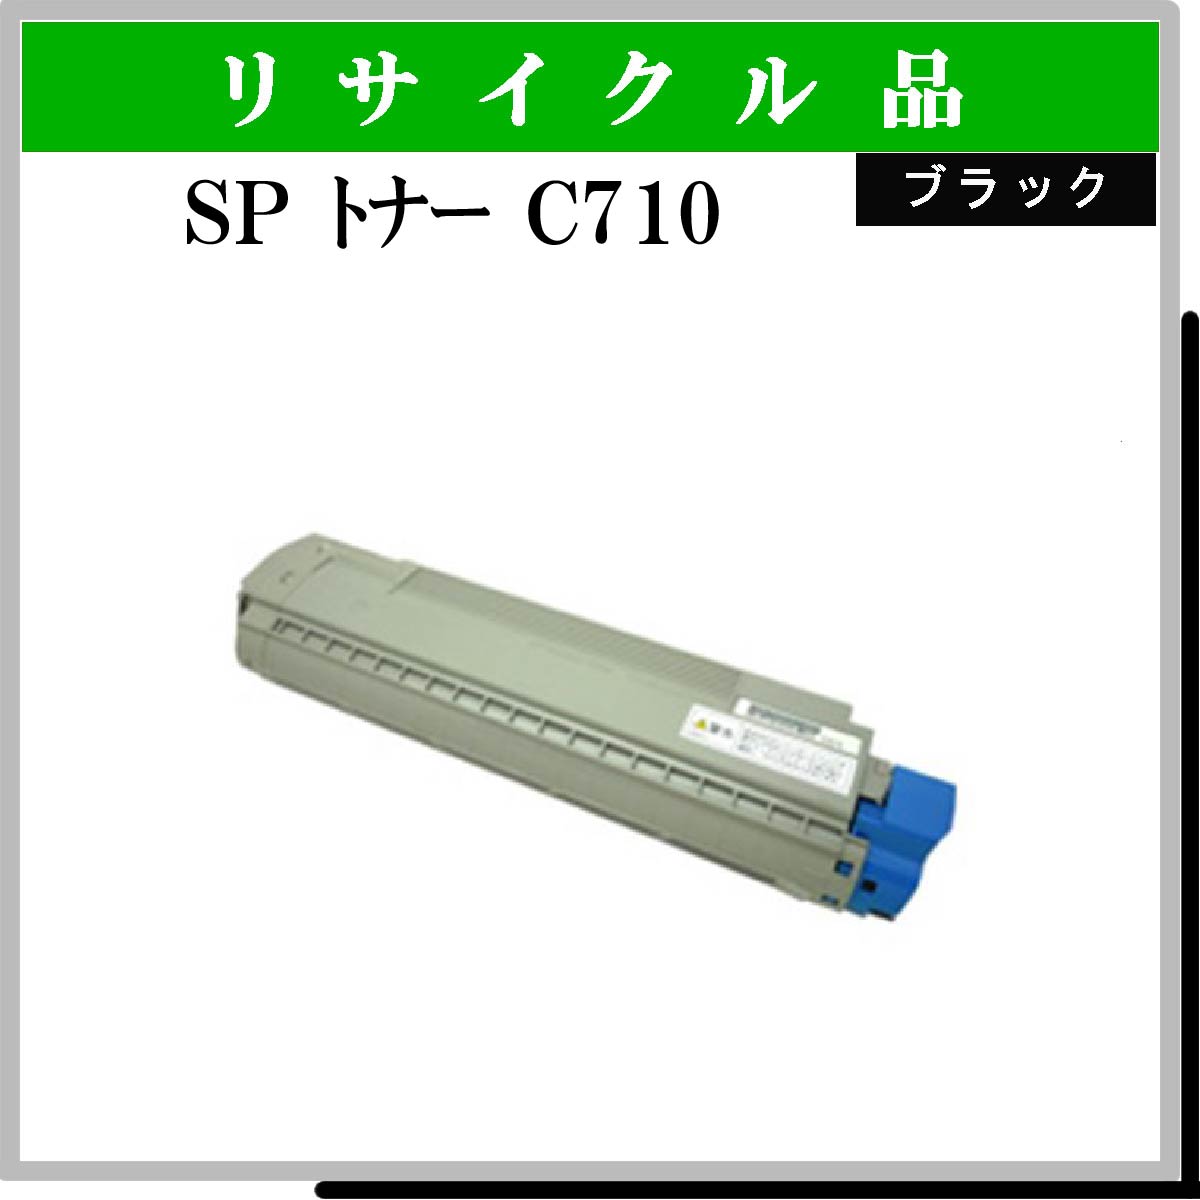 SP ﾄﾅｰ C710 ﾌﾞﾗｯｸ